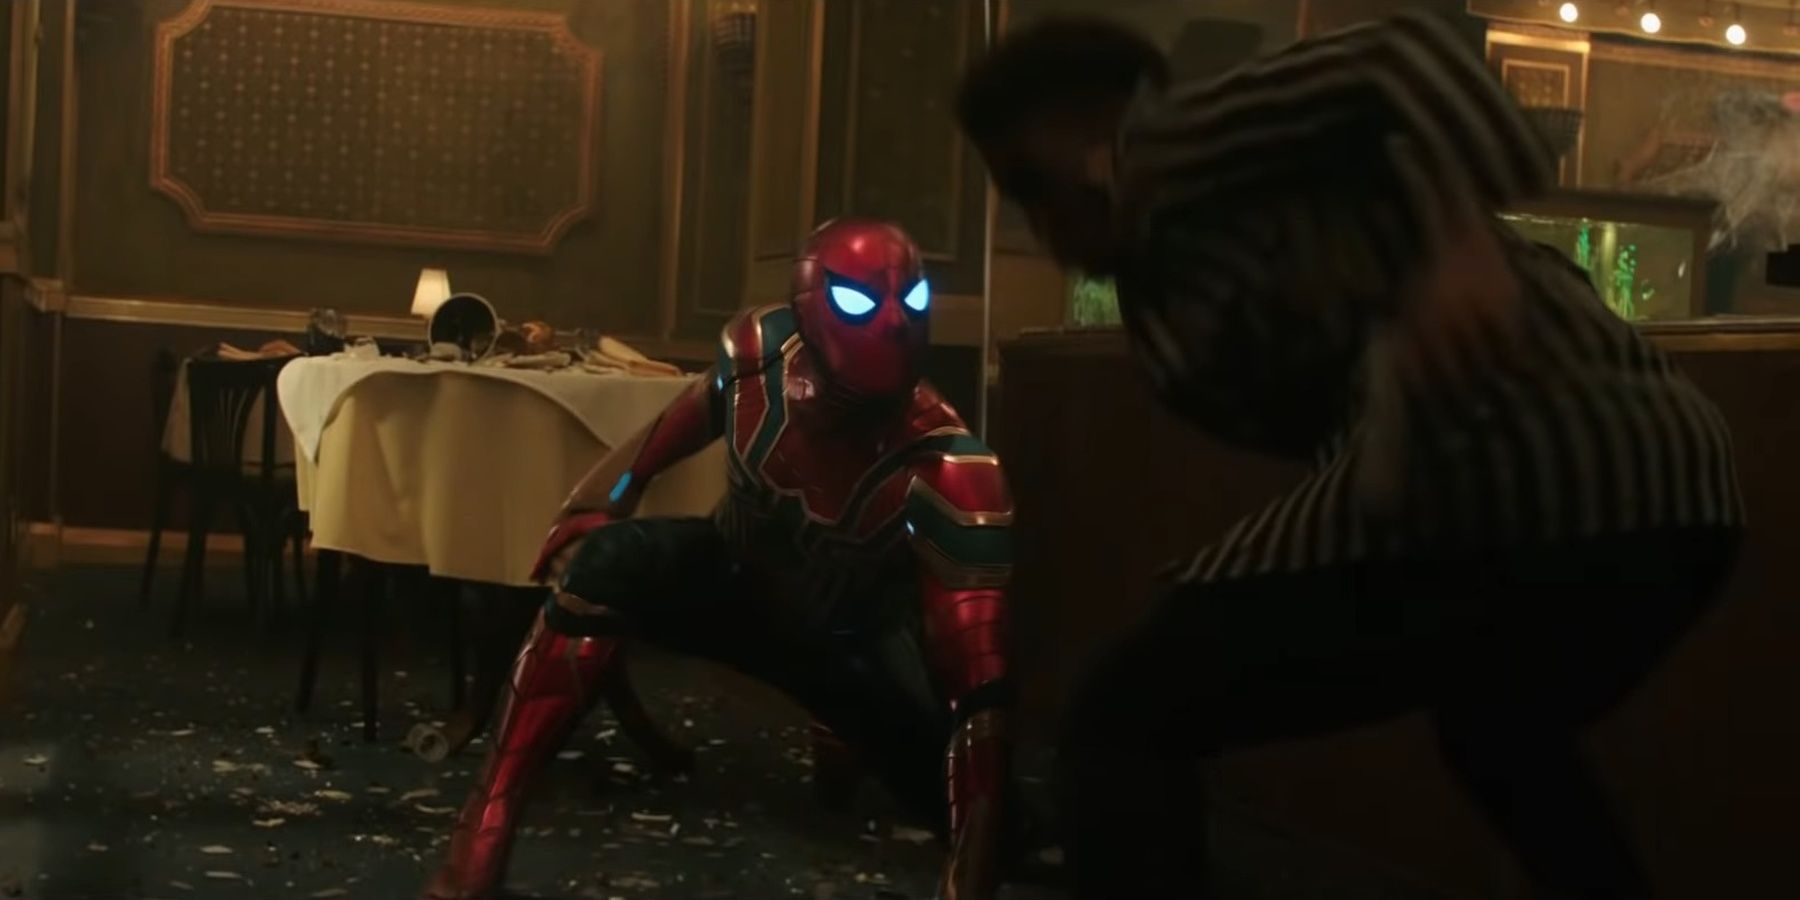 Spider-Man fights criminals in a restaurant.